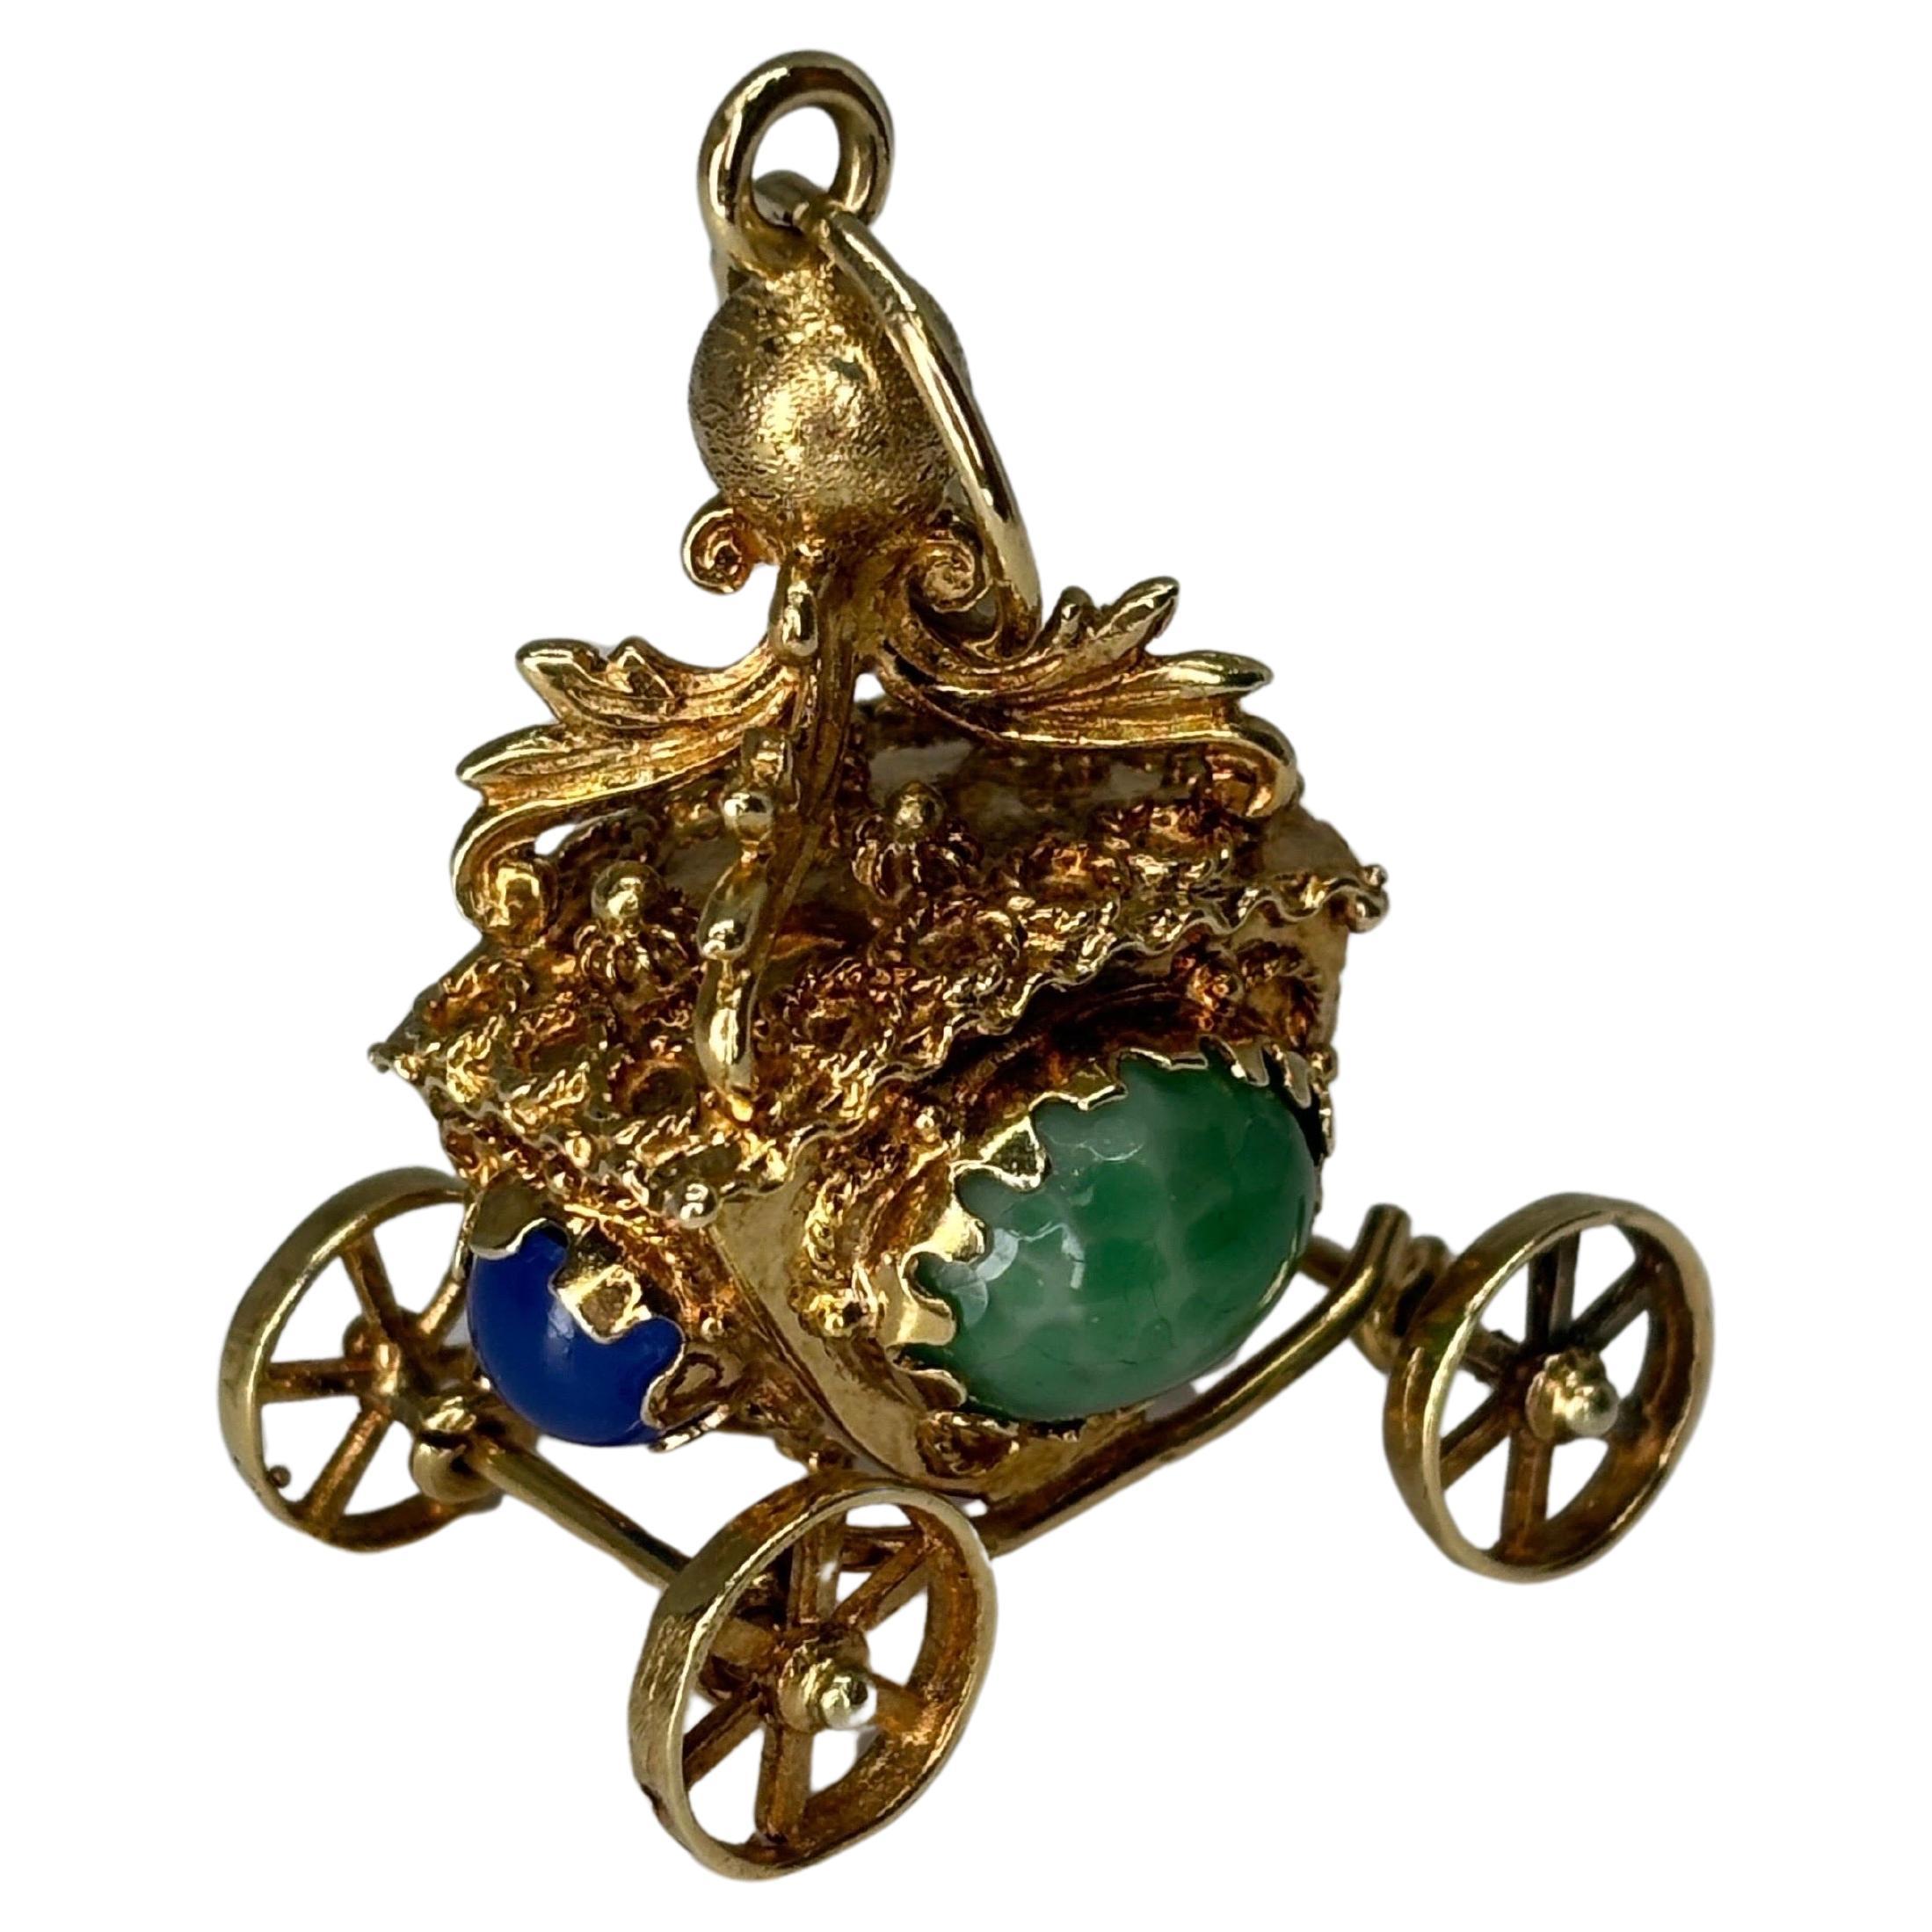 Bezaubernde 14k Gelbgold Etruscan Revival königlichen Kutsche Wagen mit beweglichen Rädern und akzentuiert mit blauen und grünen Chalzedon Cabochon Edelsteine.  

Dieser Charme verkörpert die komplizierte Goldarbeit und die aufwendigen Designs, die